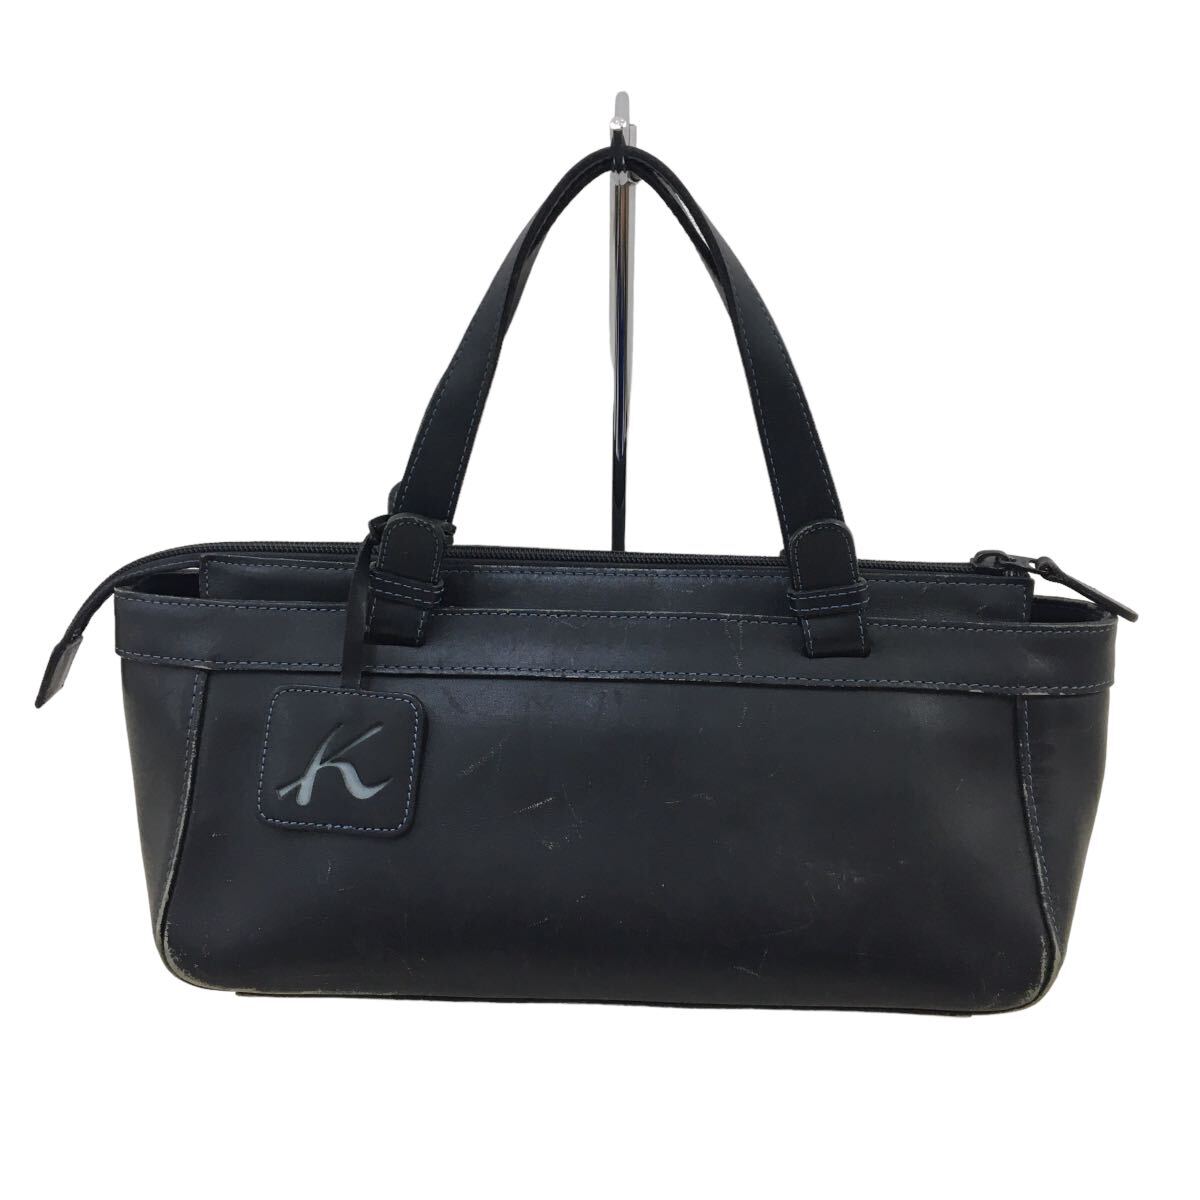 D525-⑥ Kitamura キタムラ レザー ハンドバッグ トートバッグ 手持ち 手提げ かばん カバン 鞄 バッグ BAG ブラック 実寸参考_画像1